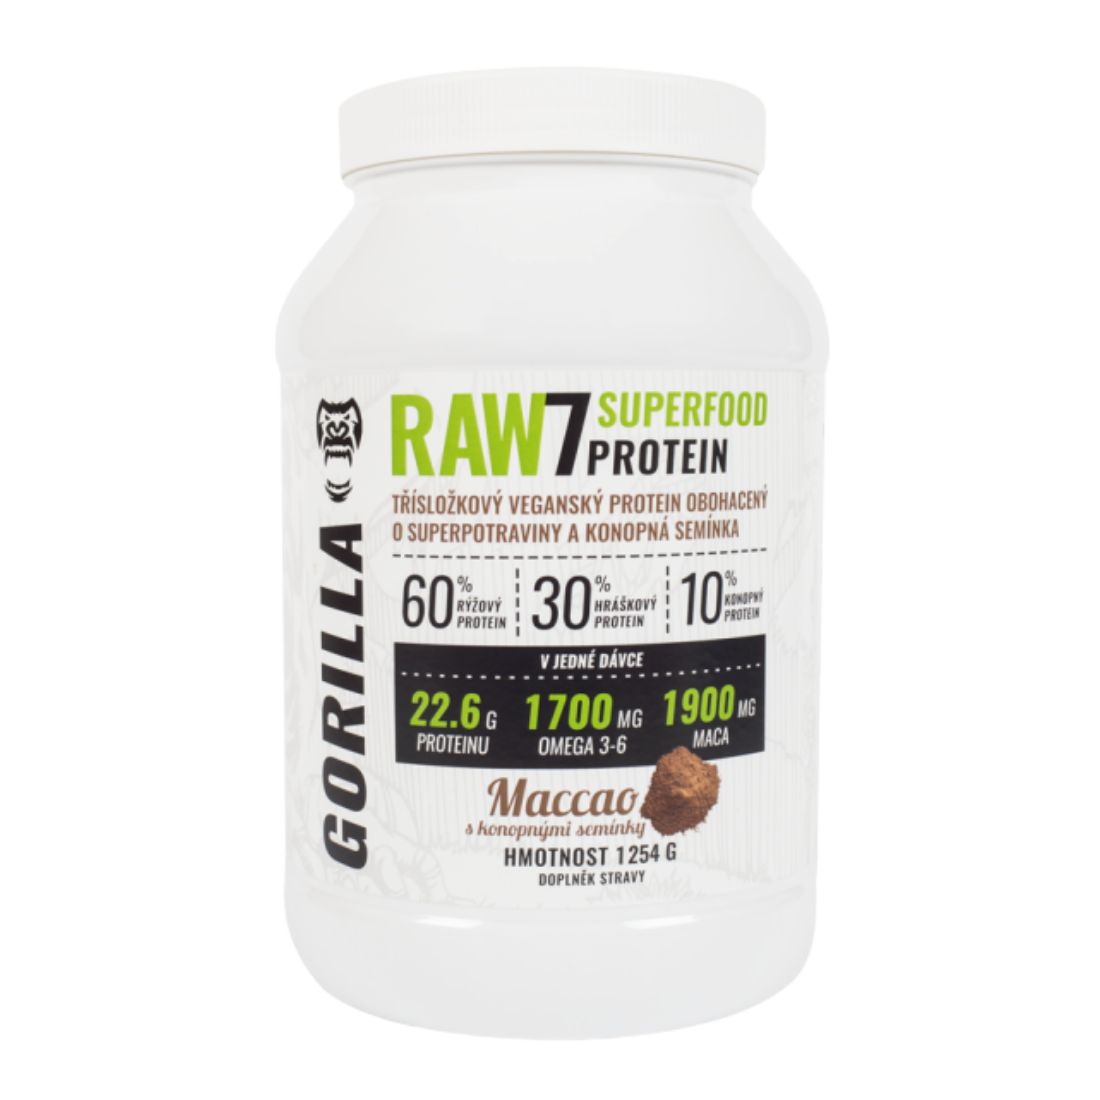 RAW7 SuperFood Protein 1254 g - rostlinný protein